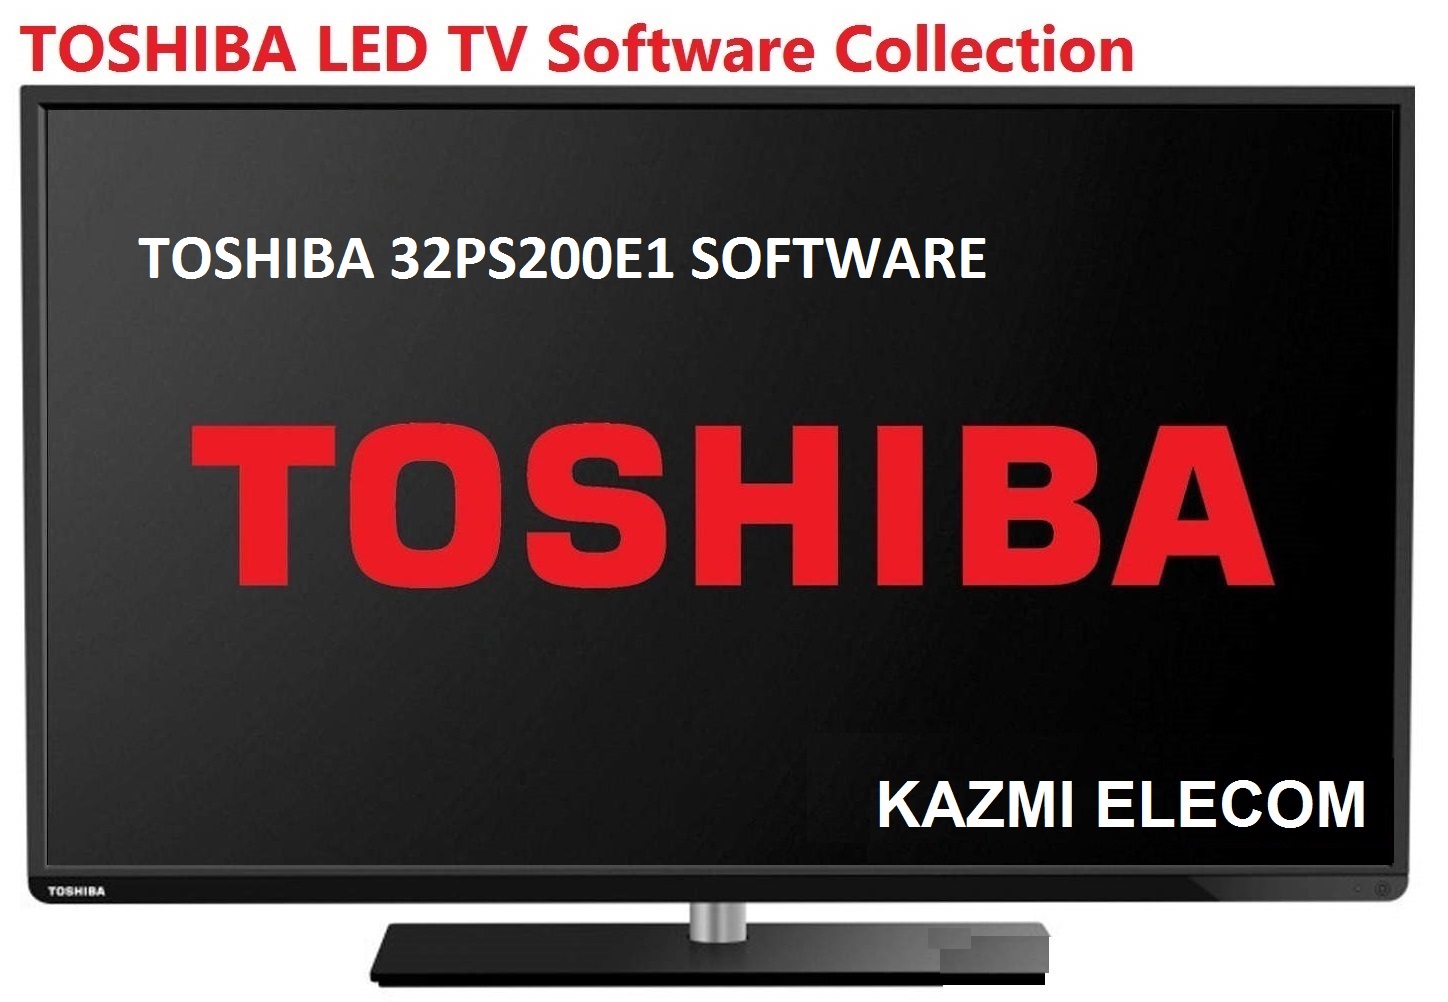 Toshiba 32Ps200E1